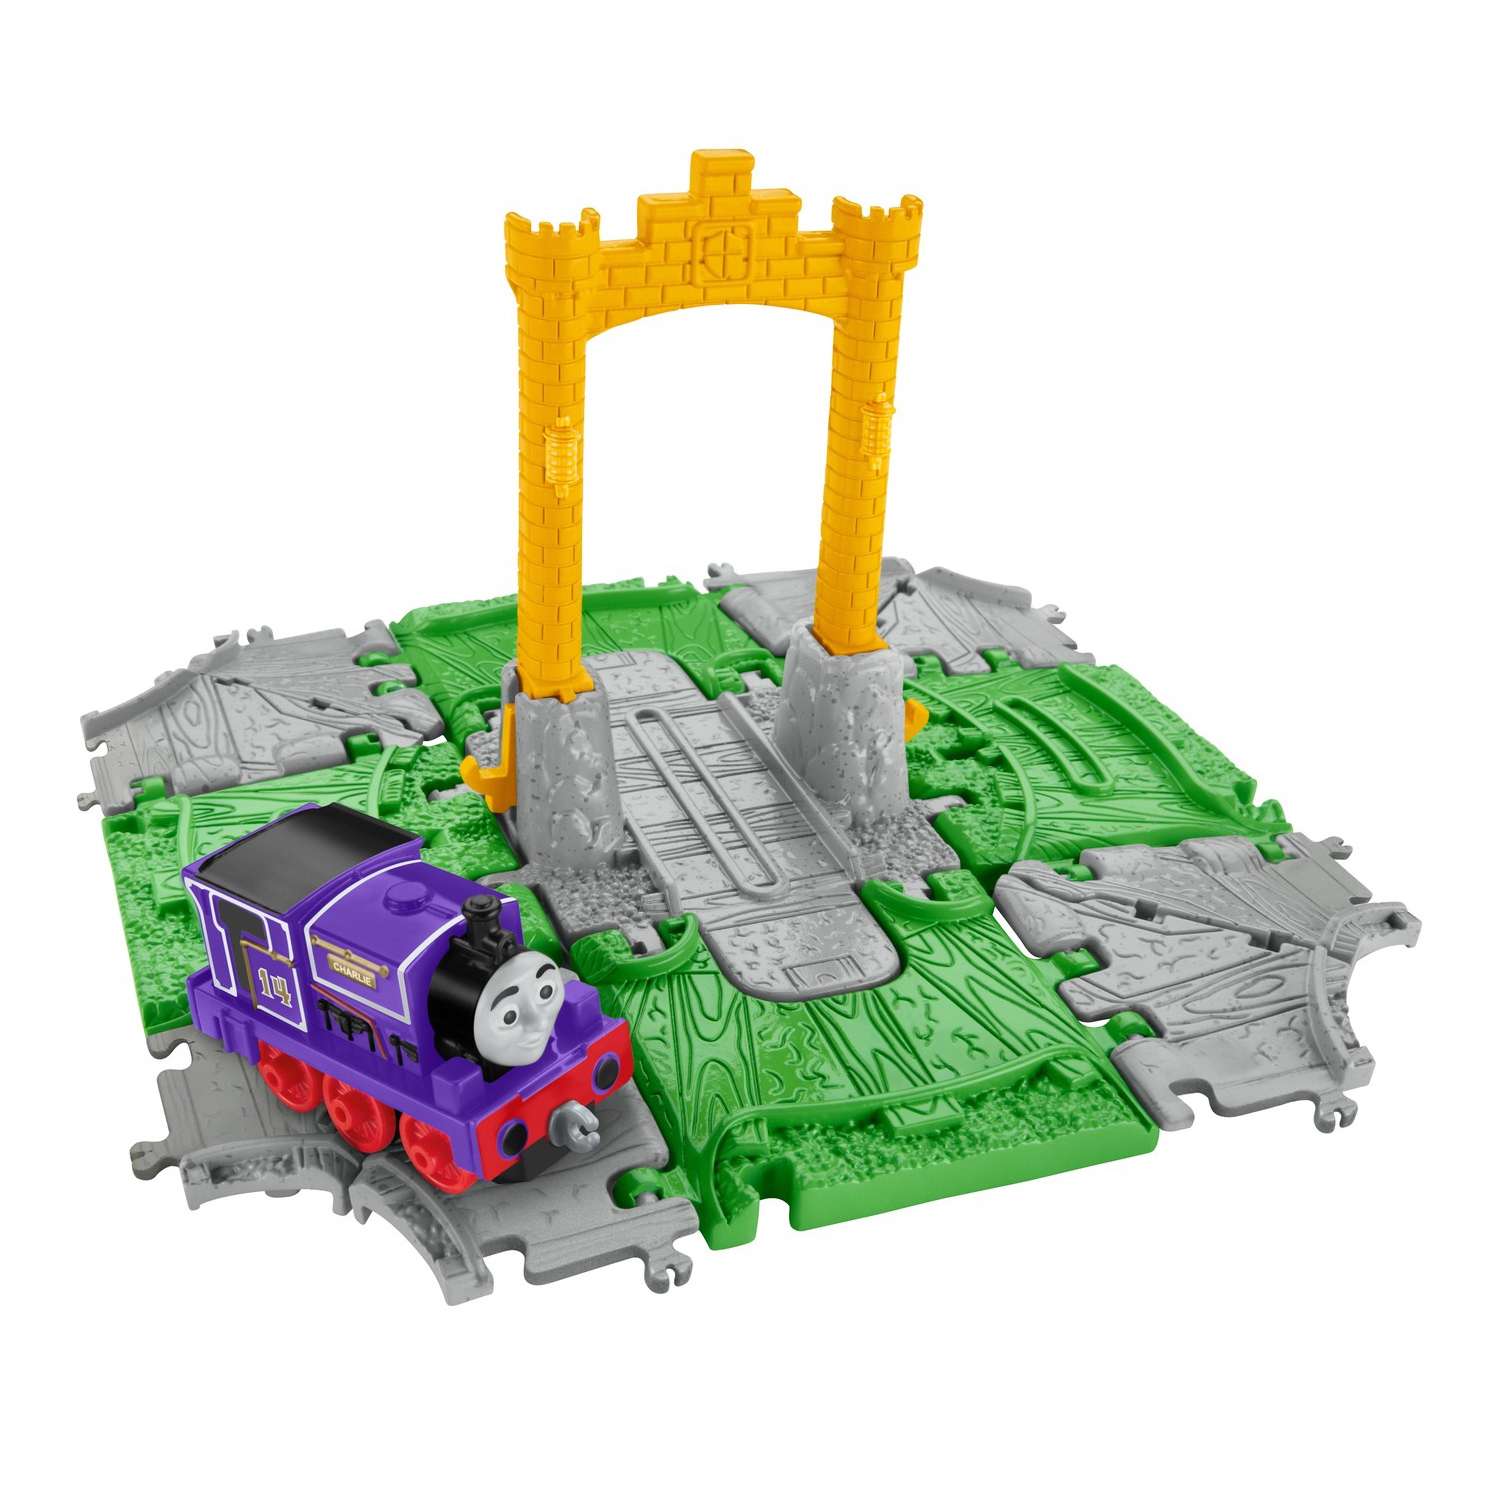 Игровой набор Thomas & Friends переносной Куб в ассортименте FBC51 - фото 2